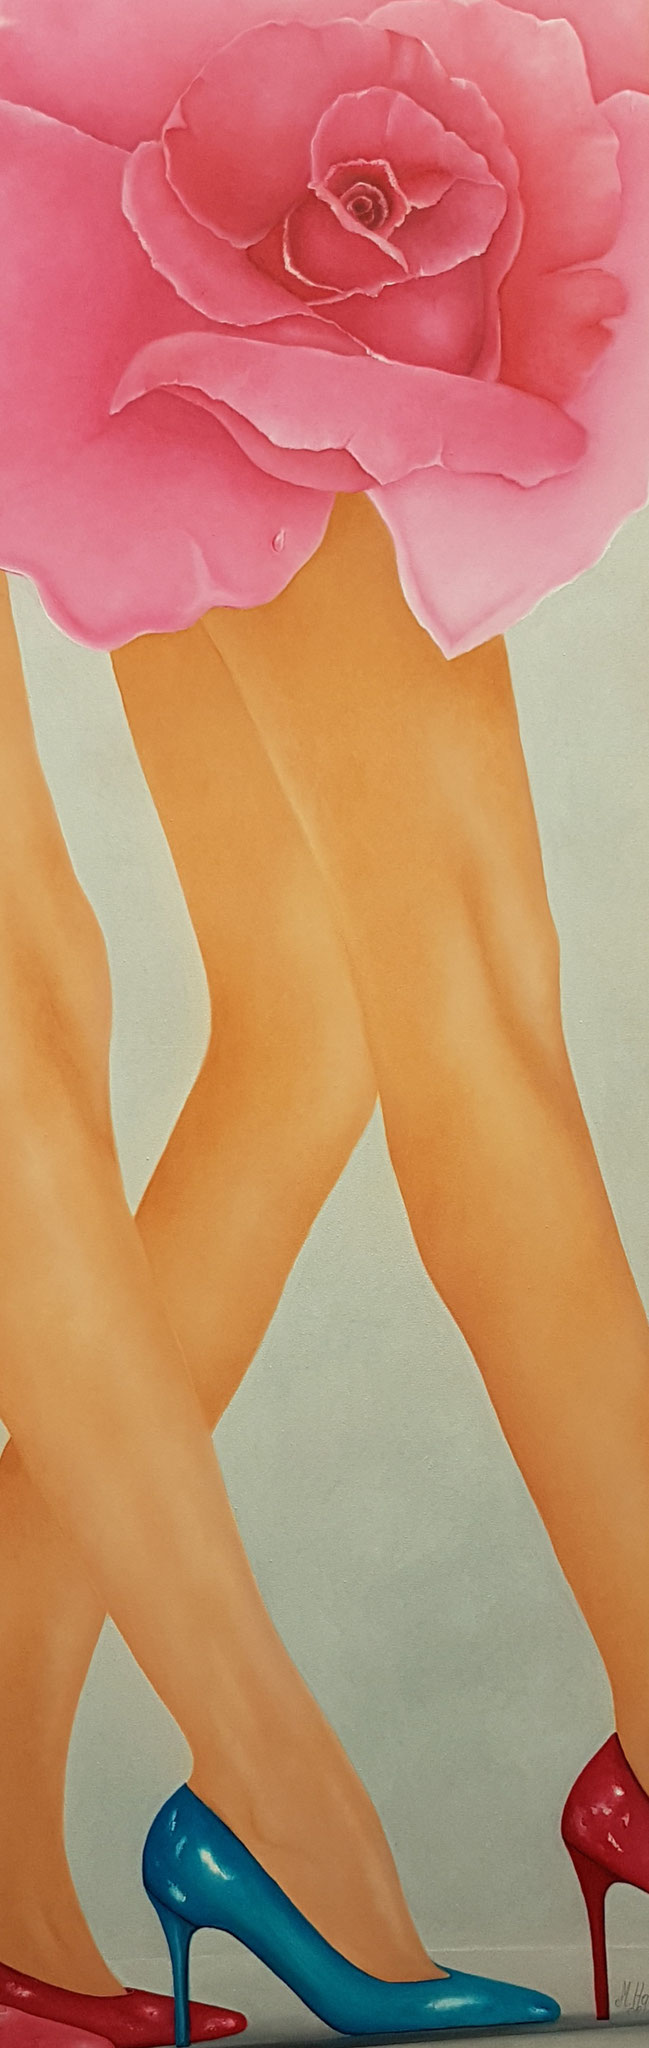 Catwalk4-180x60cm-Oelfarbe-auf Leinwand-Beine